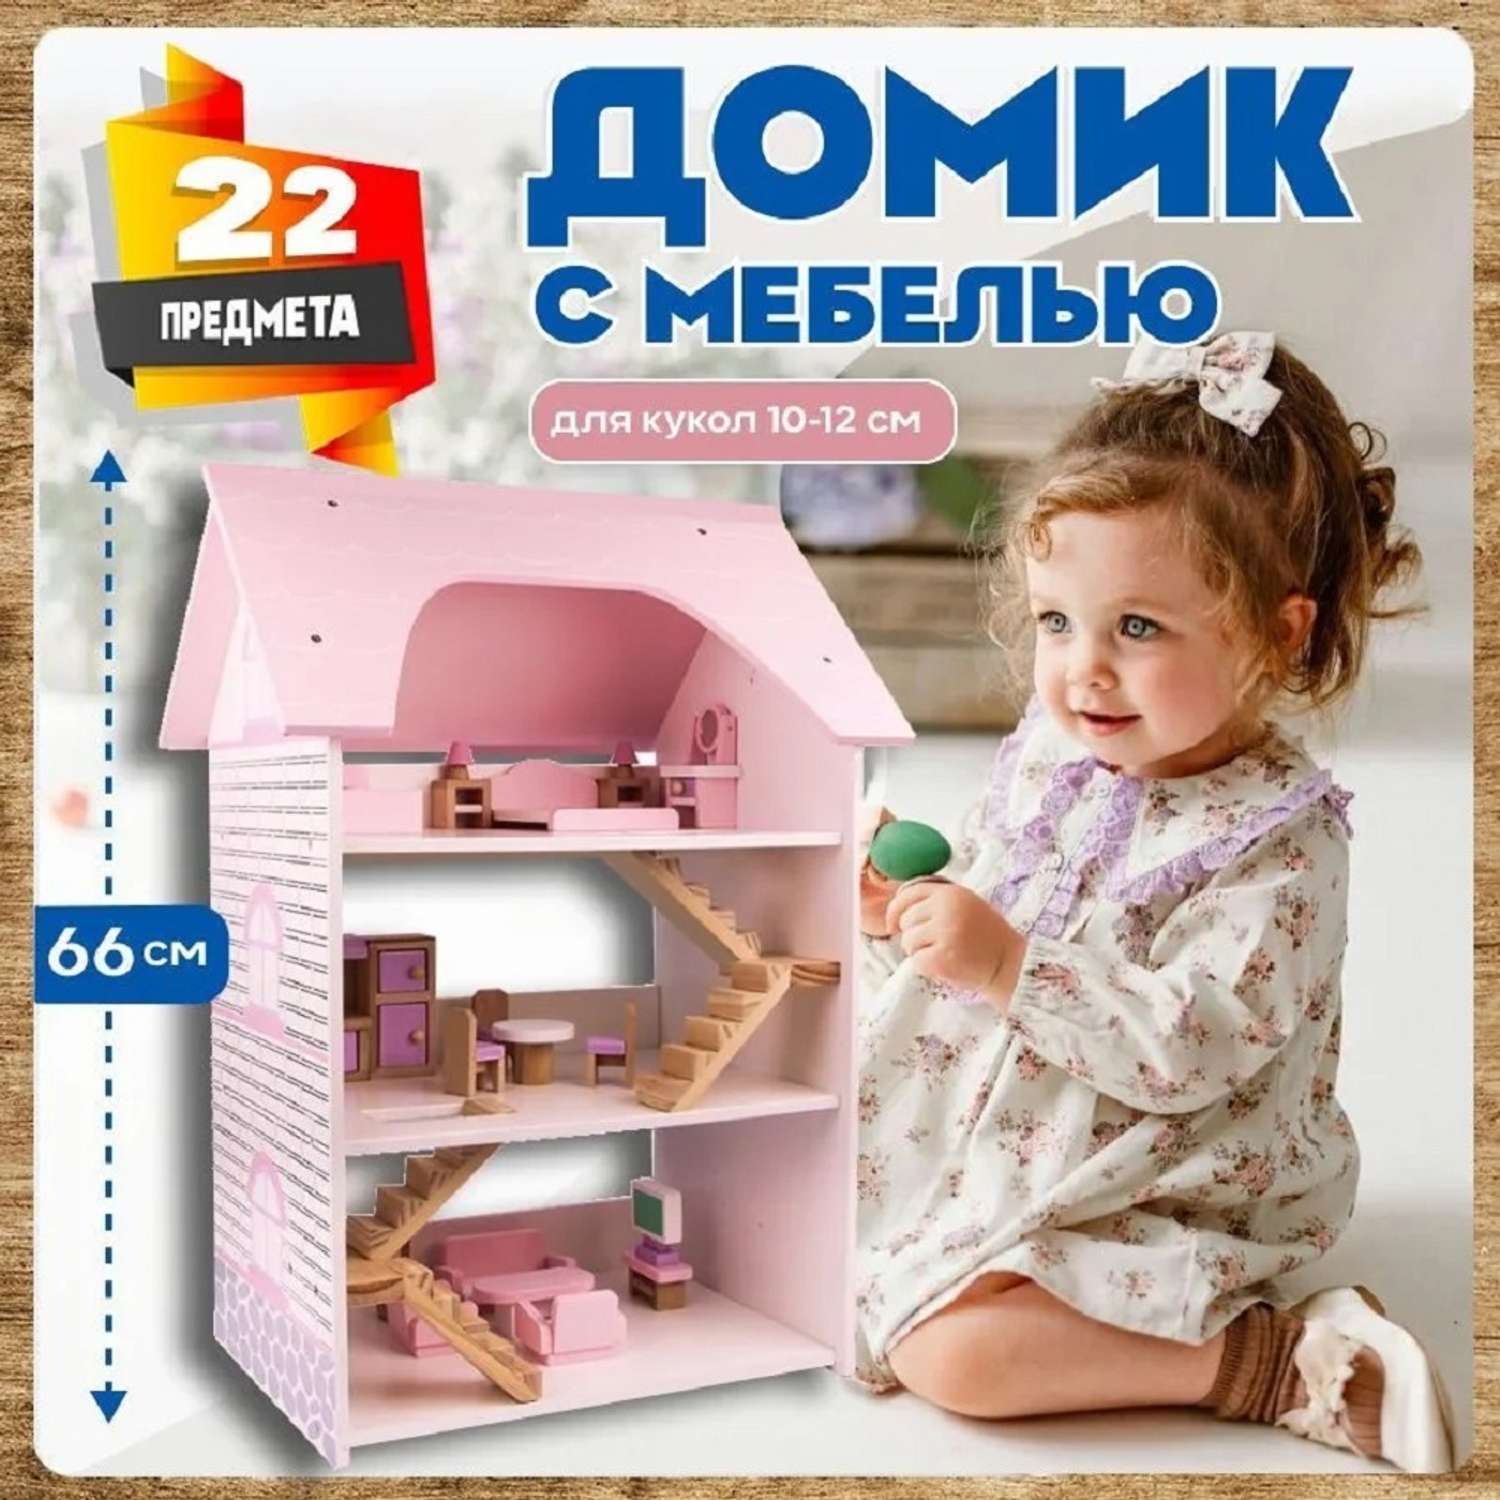 Кукольный домик с мебелью Зайка любит 22 предмета 3 этажа MSN19004 - фото 1